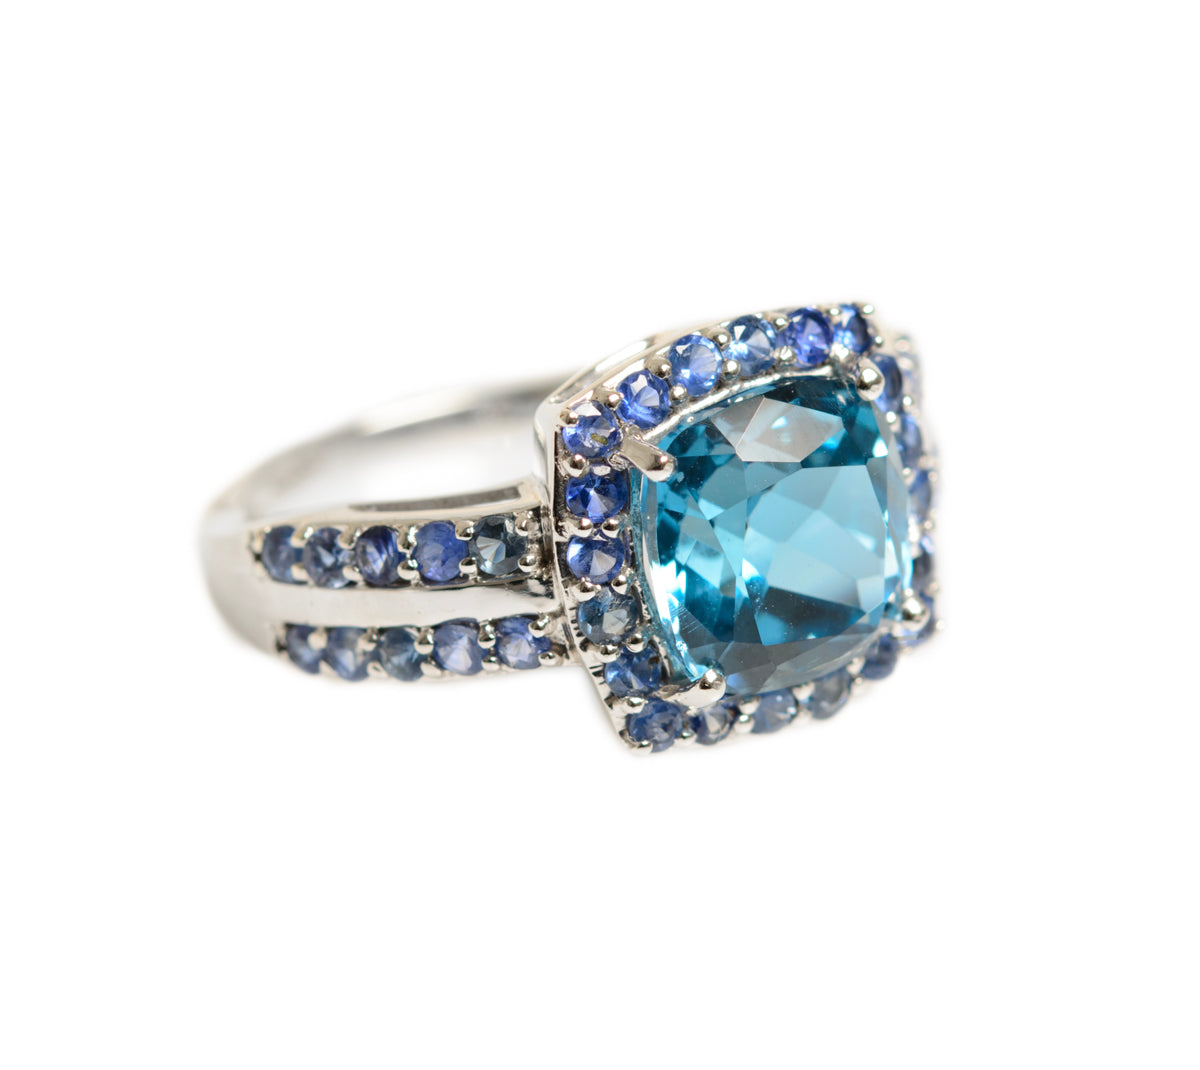 9ct White Gold Ring 2.8 Carat Blue Topaz & Tanzanite Natural Gemstones UK Size J (A1418)